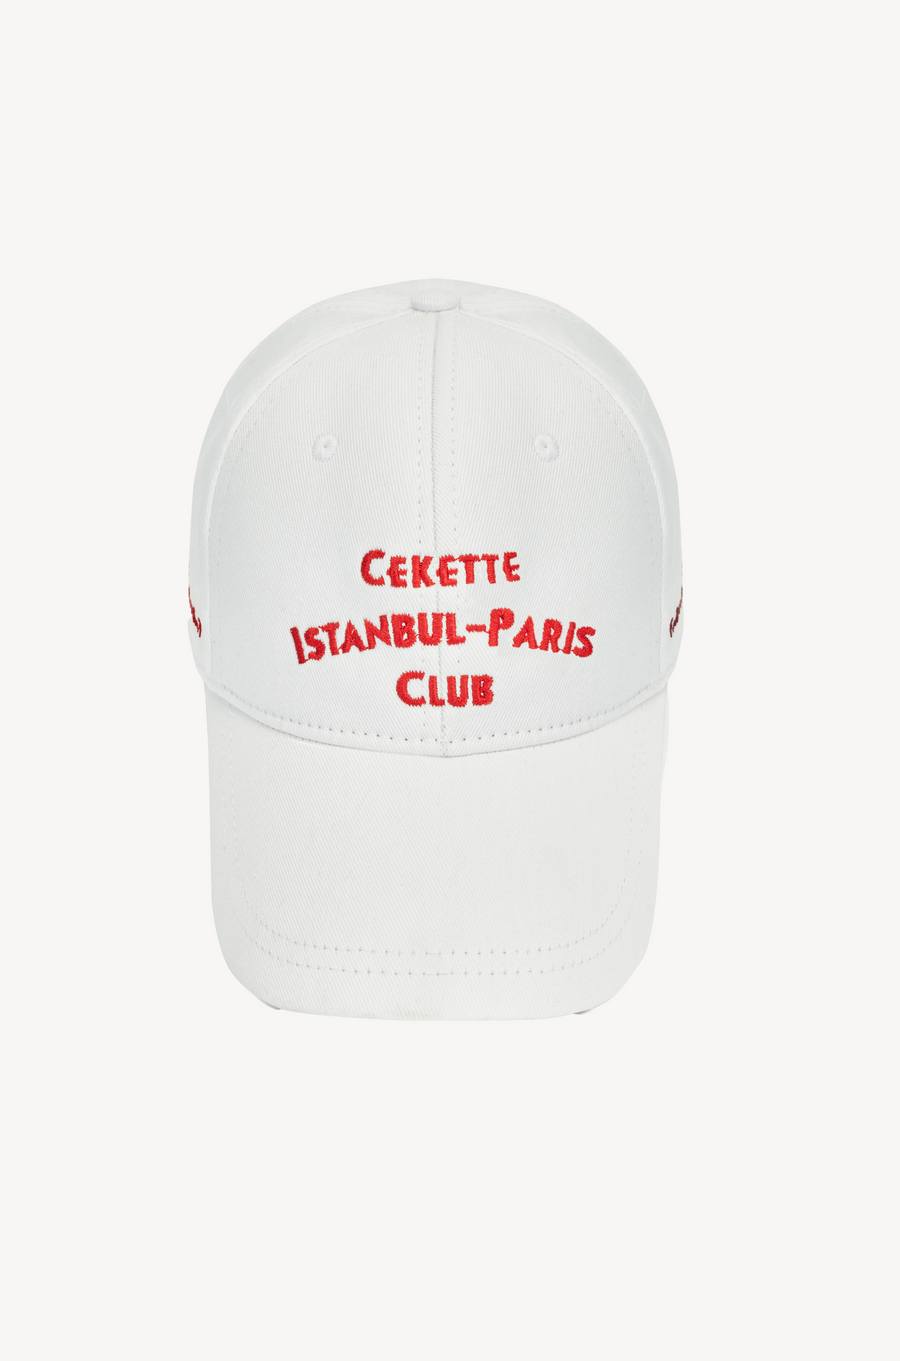 ISTANBUL-PARIS CLUB CAP